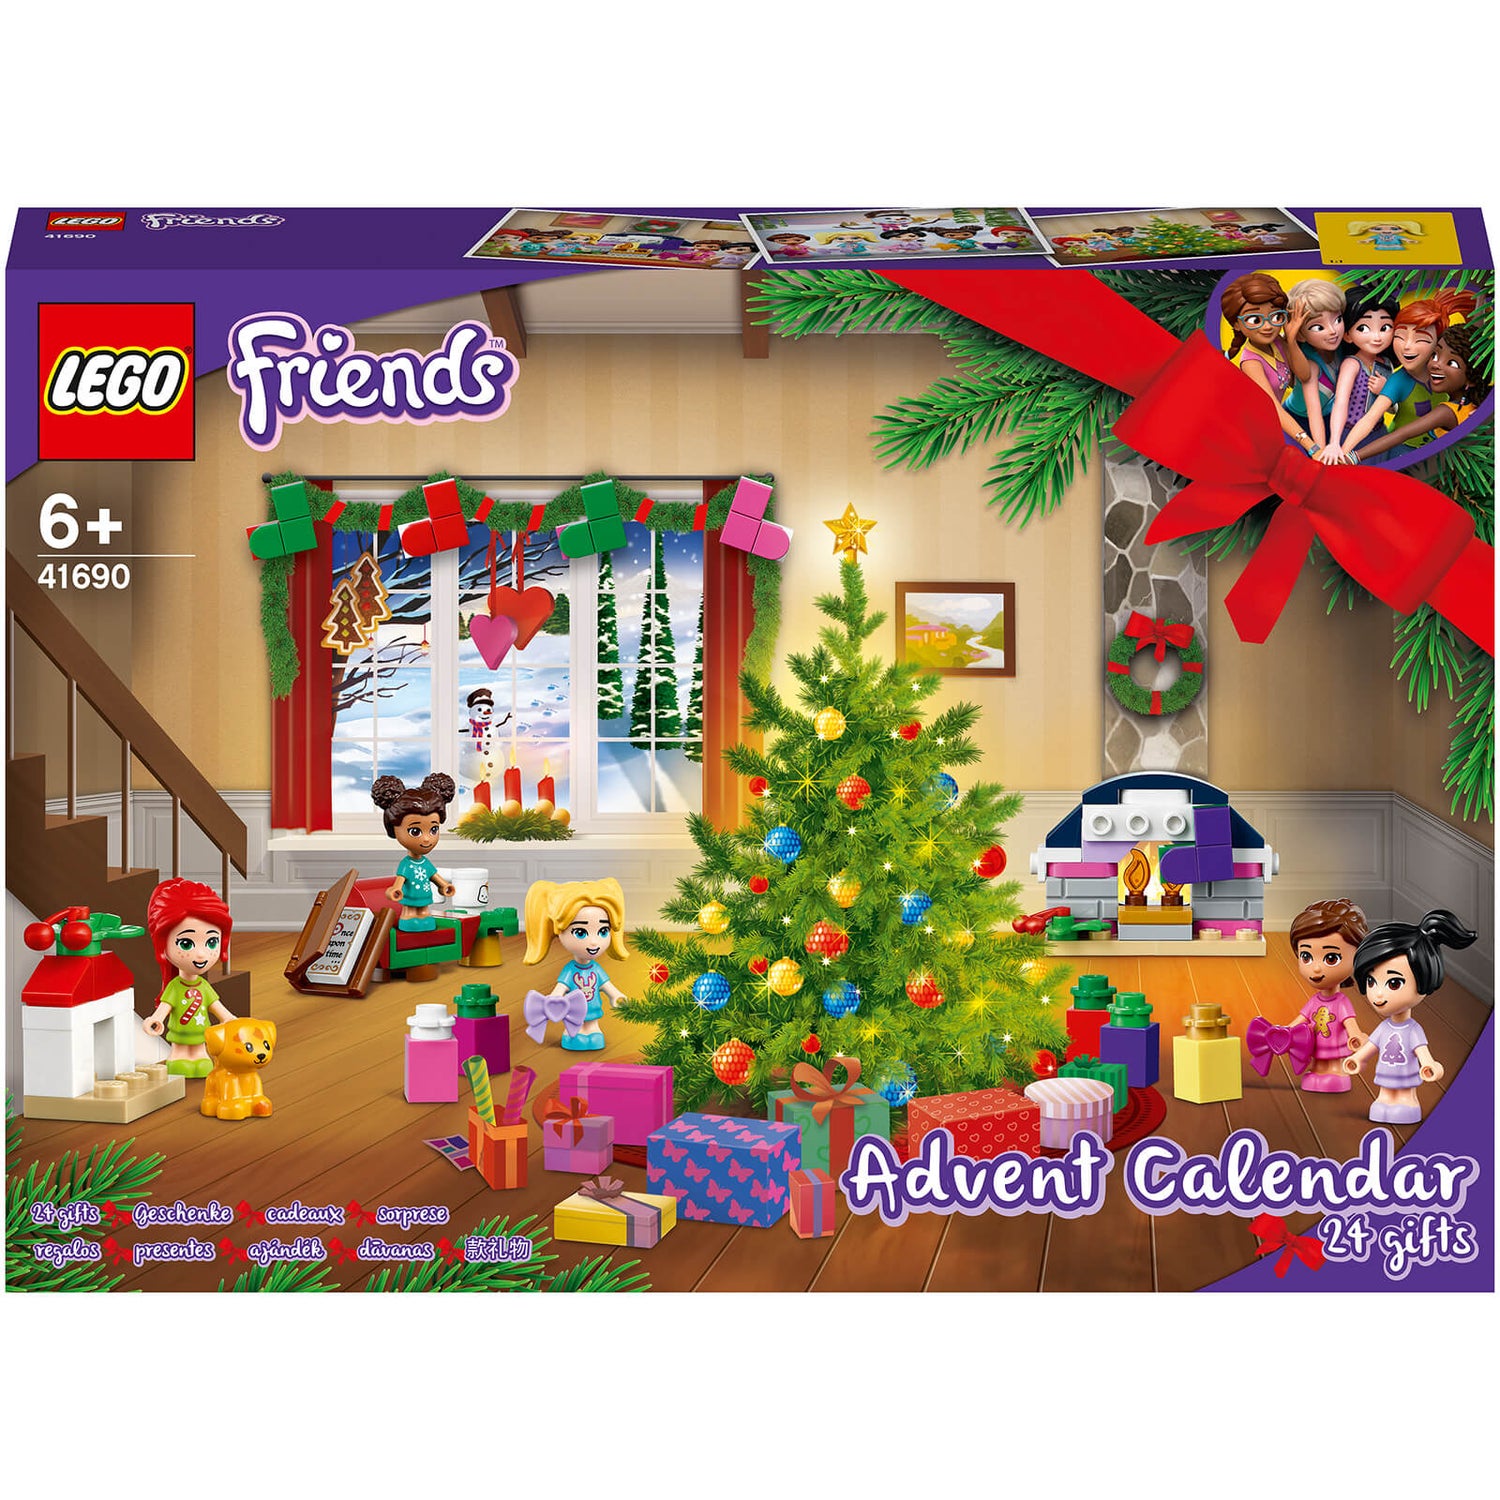 LEGO Friends: Advent Calendar 2021 Christmas Set (41690)